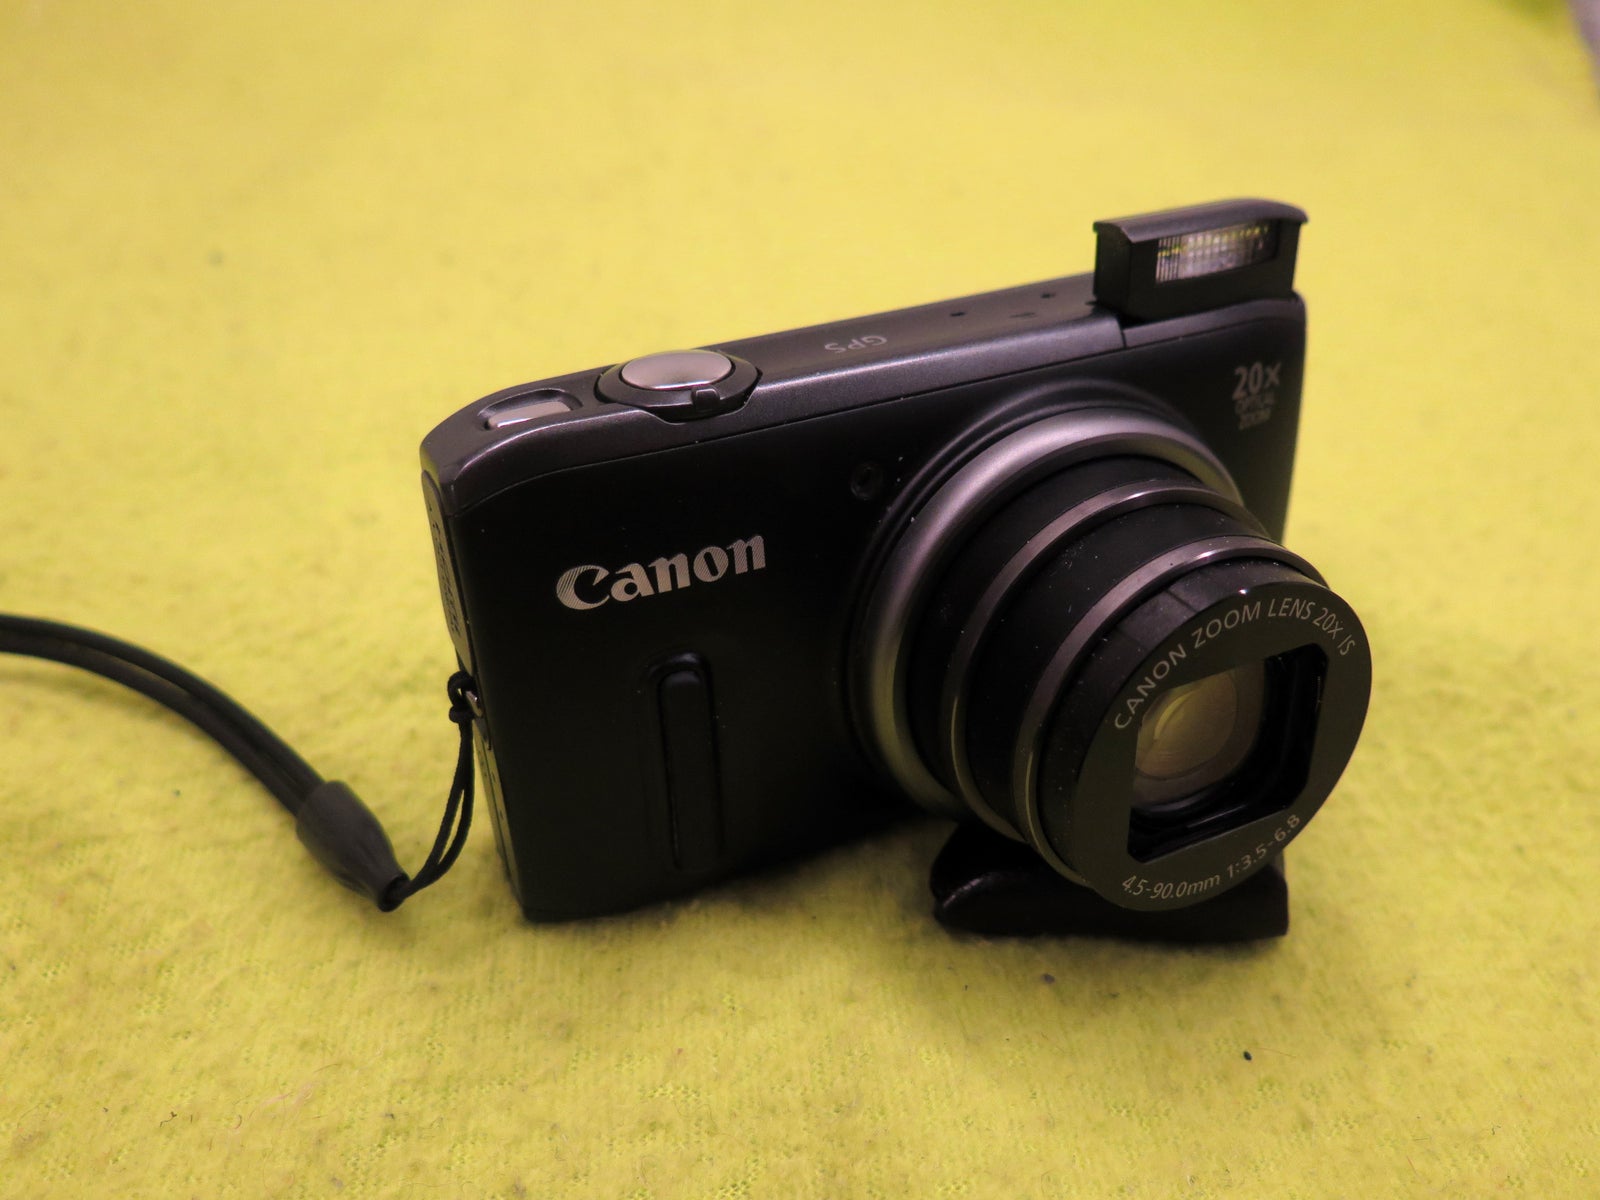 Canon, Canon SX-260, 12,1 megapixels